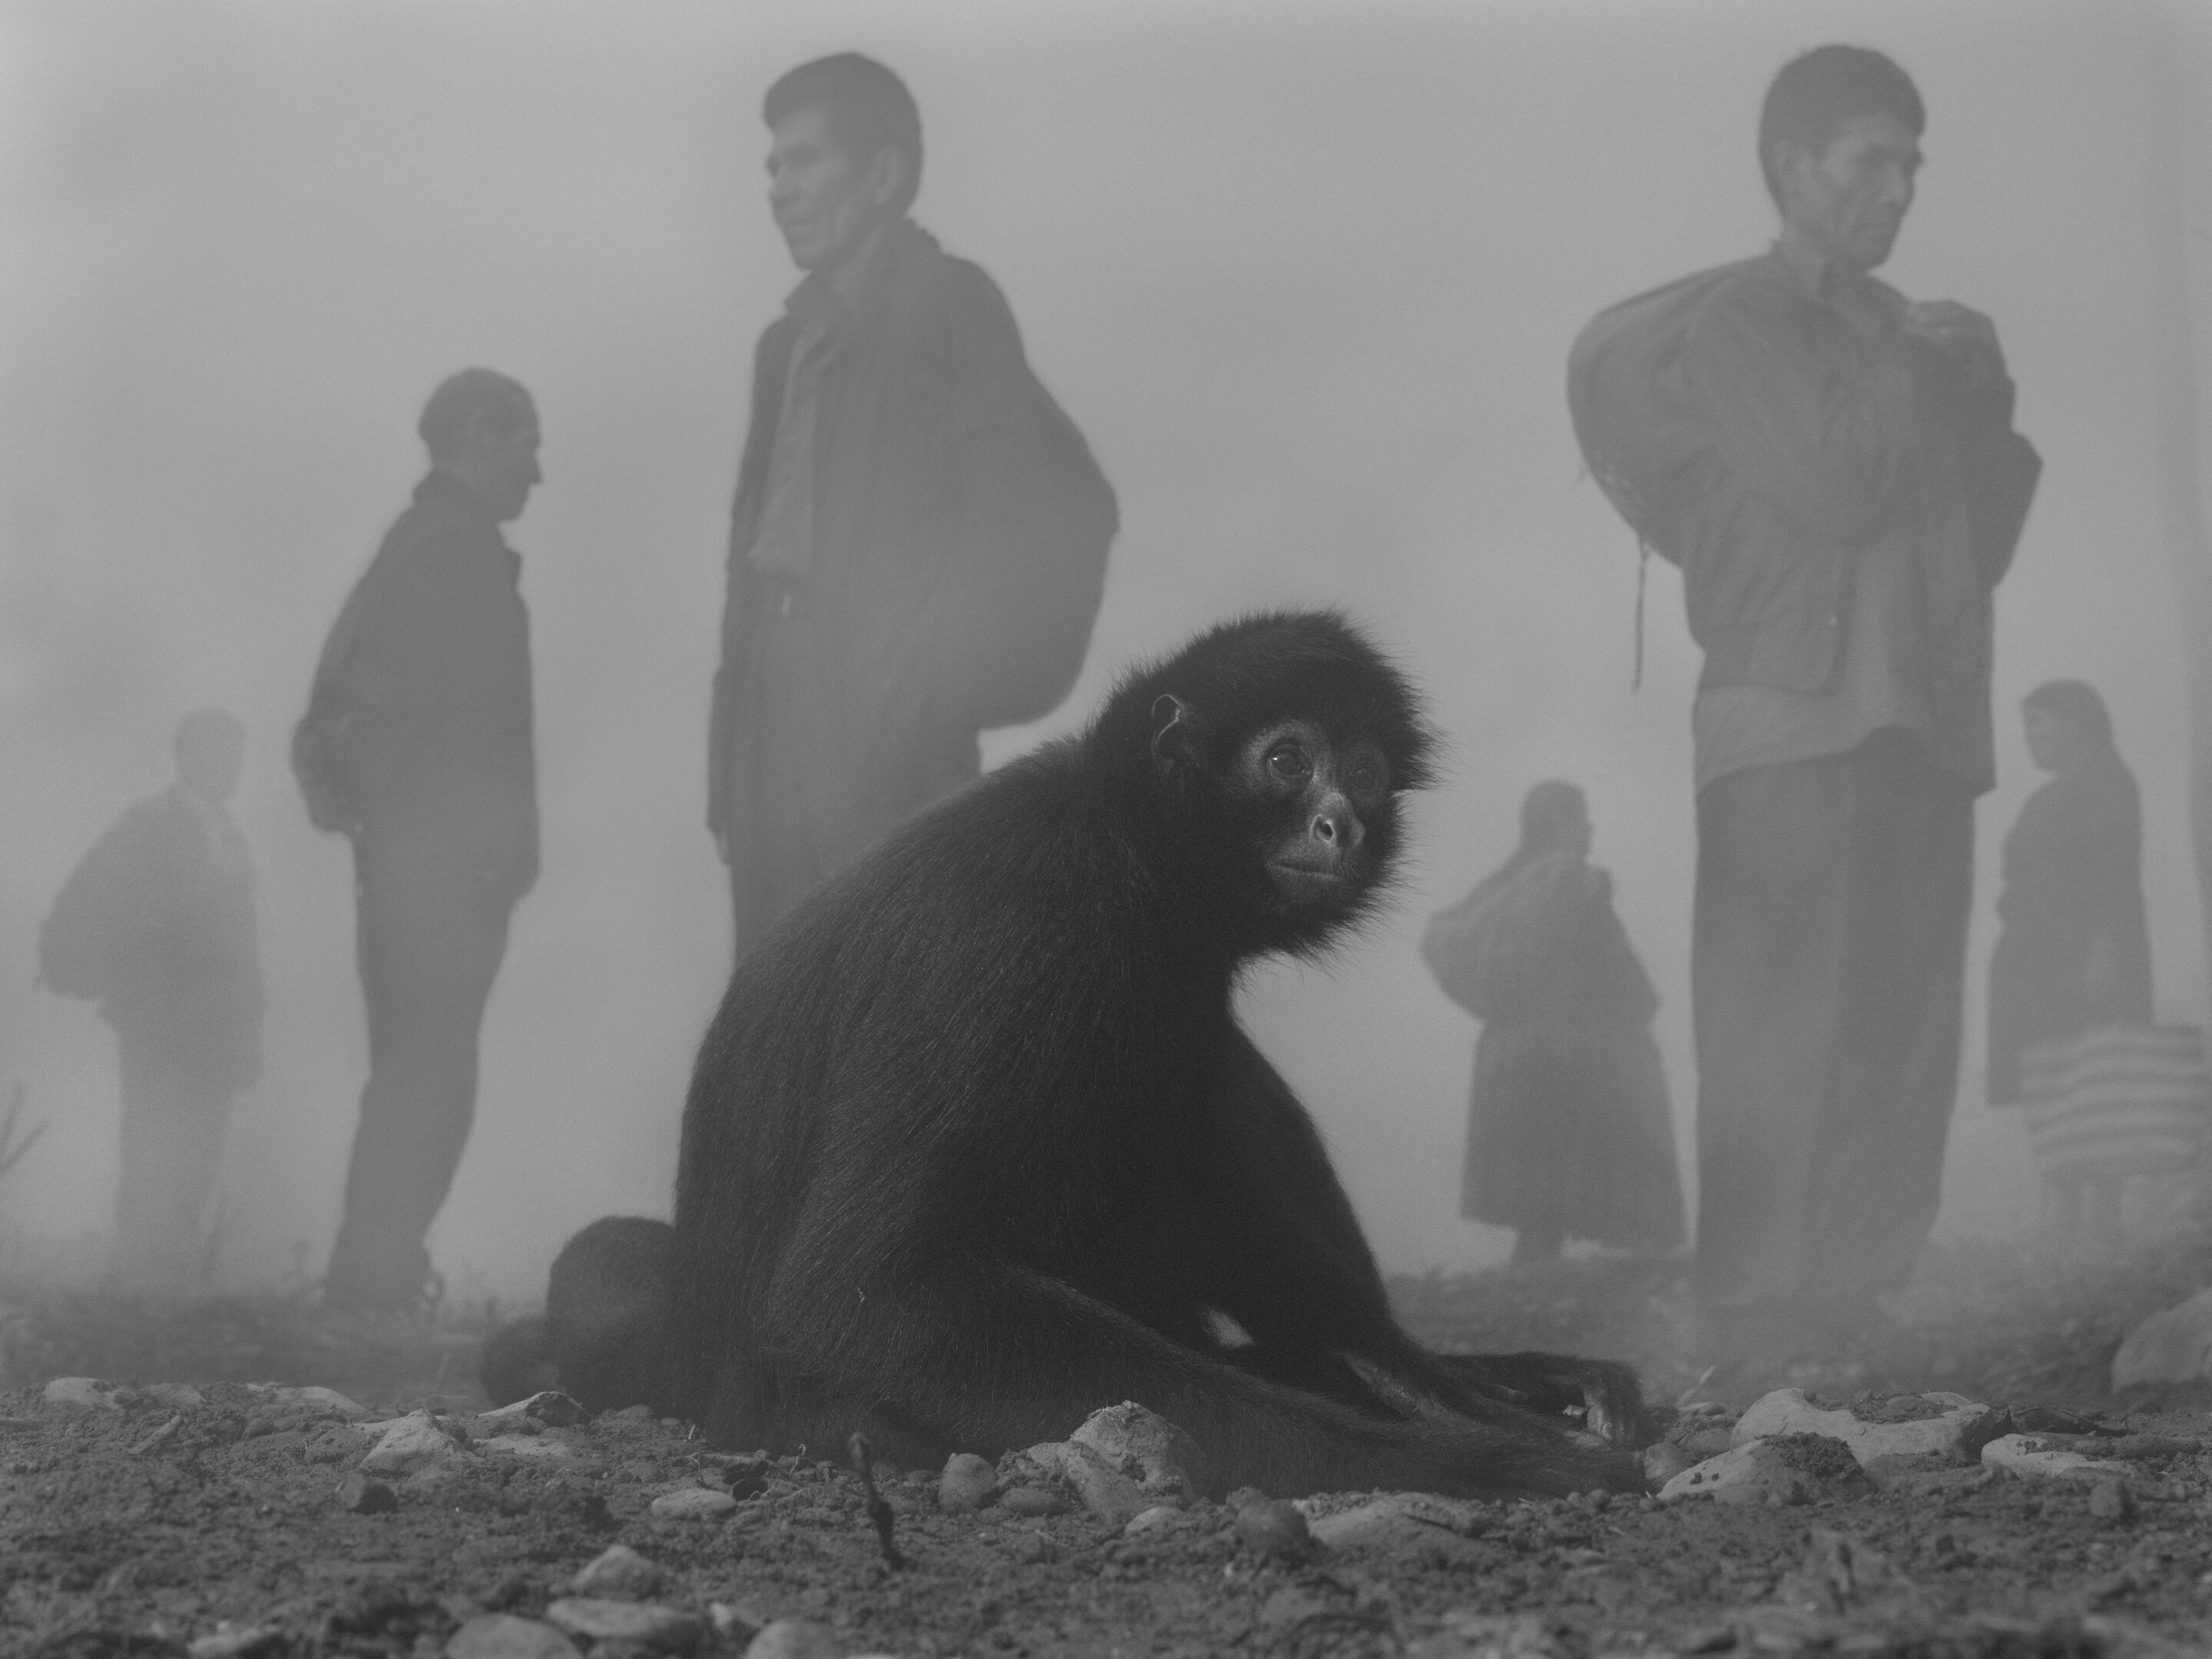 Nick Brandt, The Day May Break, Ausstellung, Kunstausstellung, Köln, in focus Galerie, Pimienta and People in Fog Bolivia